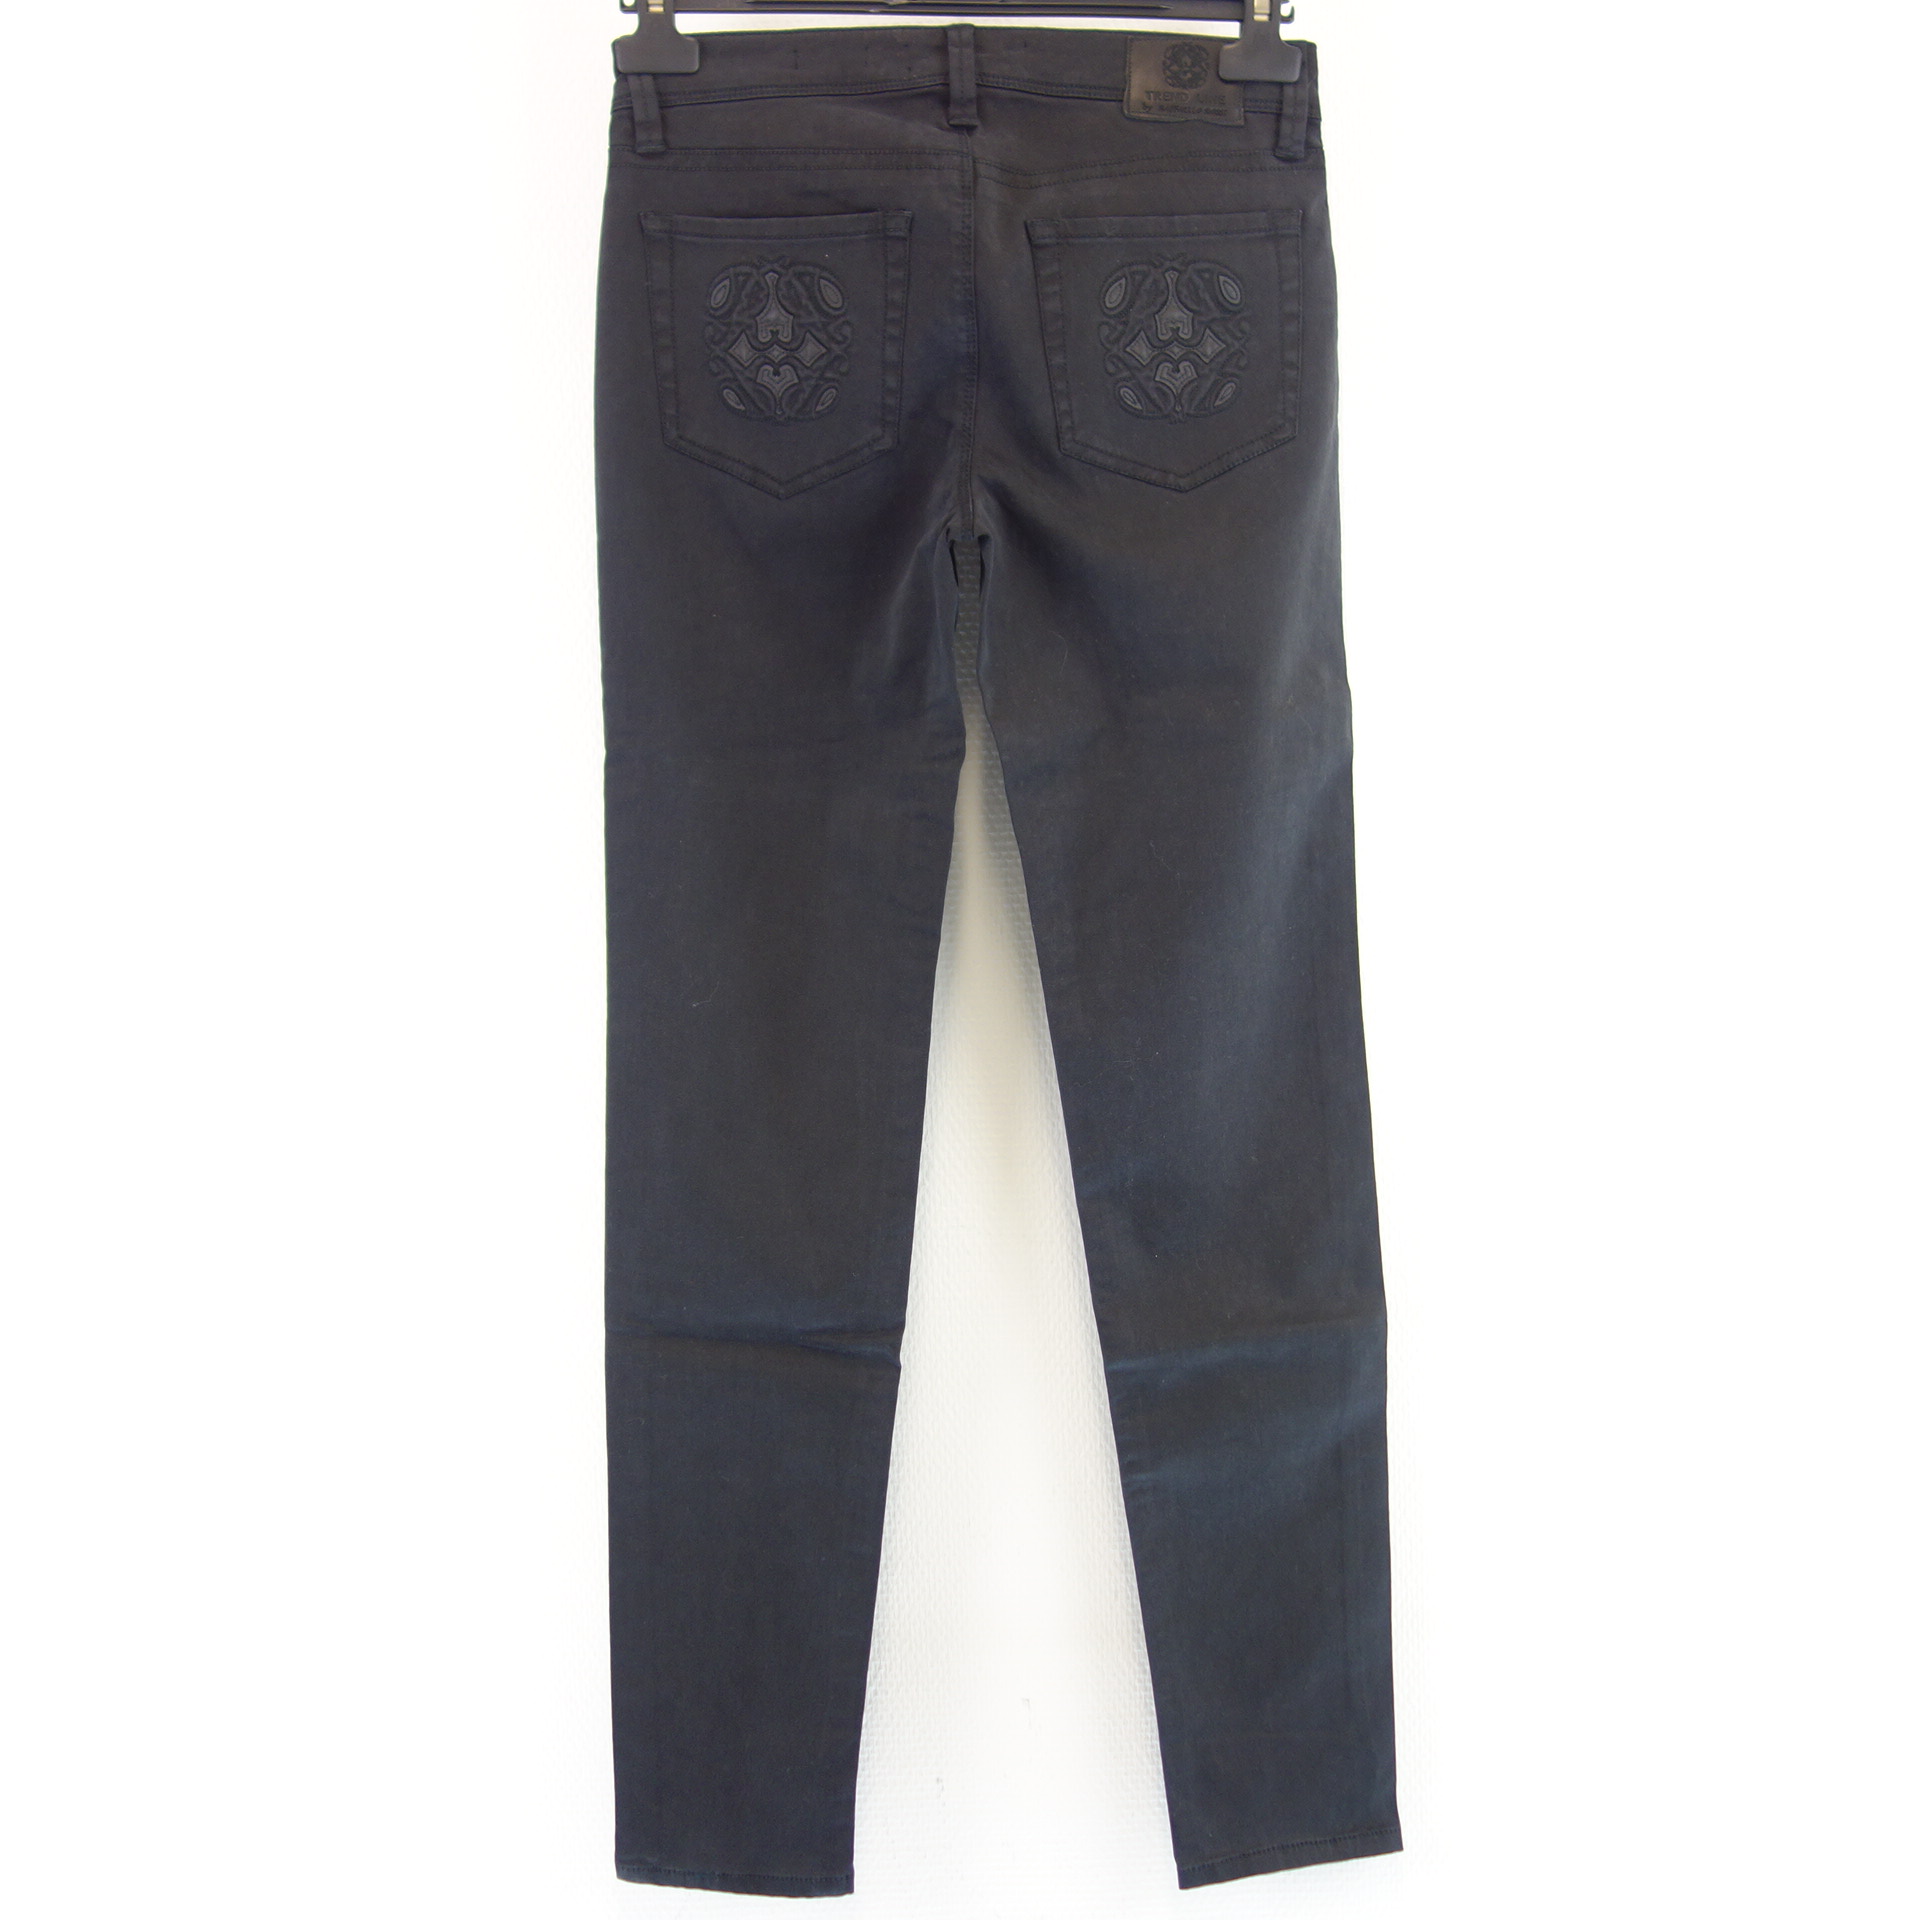 Ingenieurs zanger ingewikkeld RAFFAELLO ROSSI TREND LINE Damen Jeans Hose Jeanshose Schwarz Gr 36 Modell  Sinty Stick Slim Fit | JE743